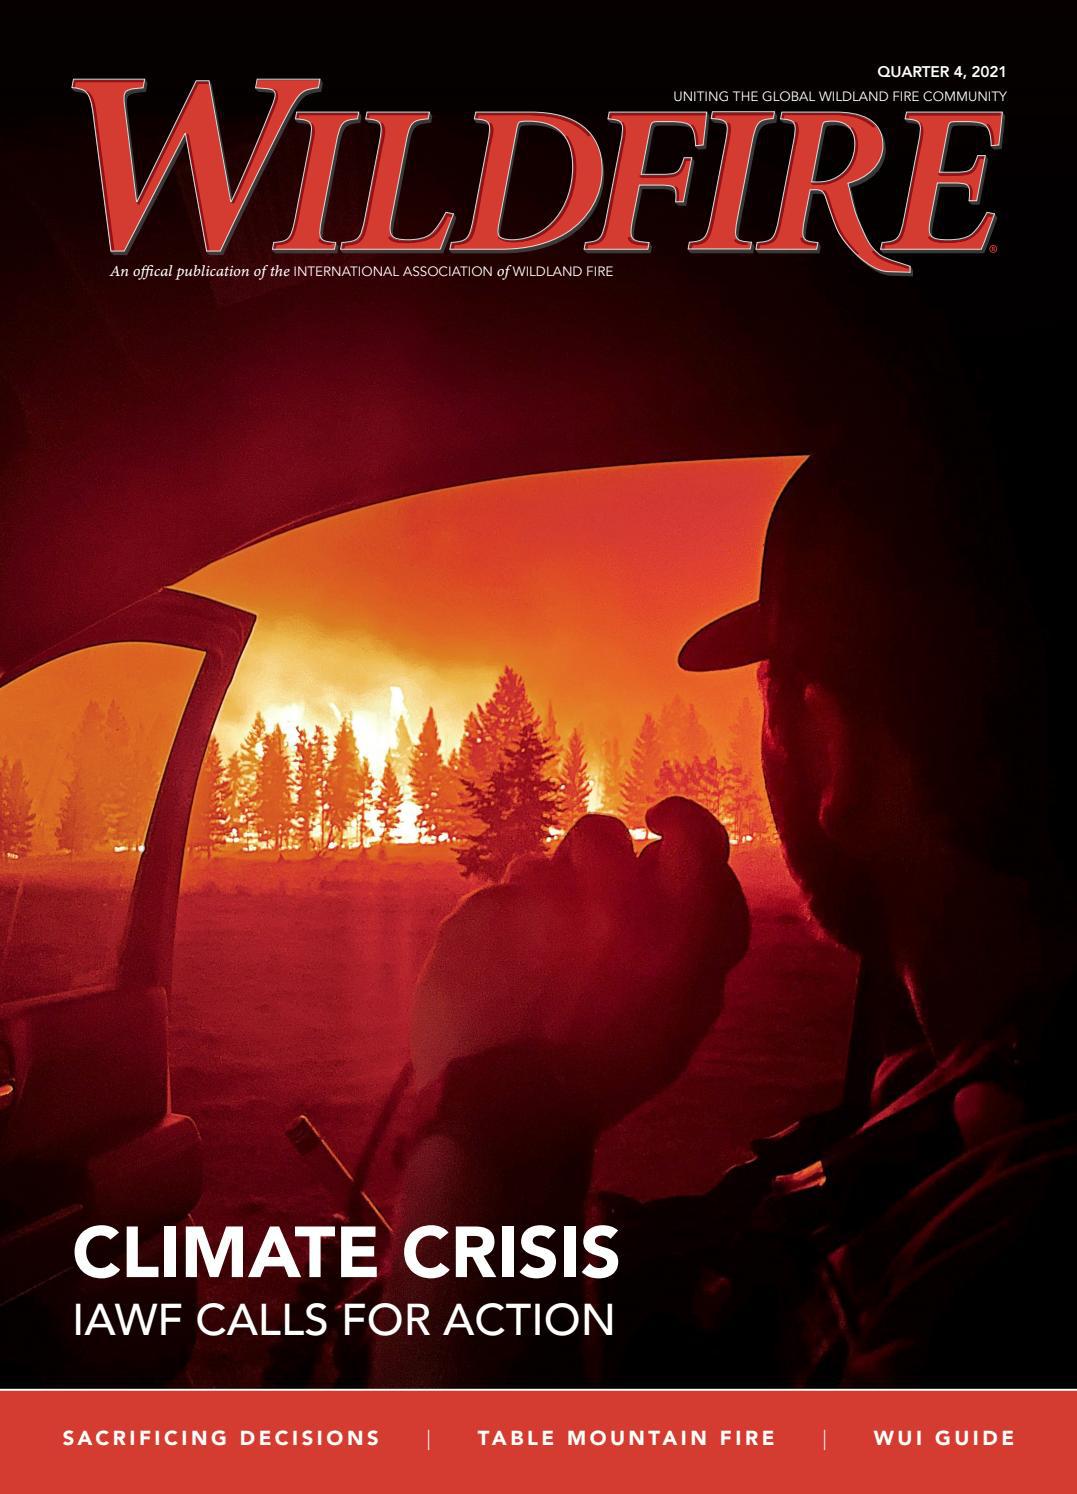 Wildfire Magazine - Quarter 4, 2021